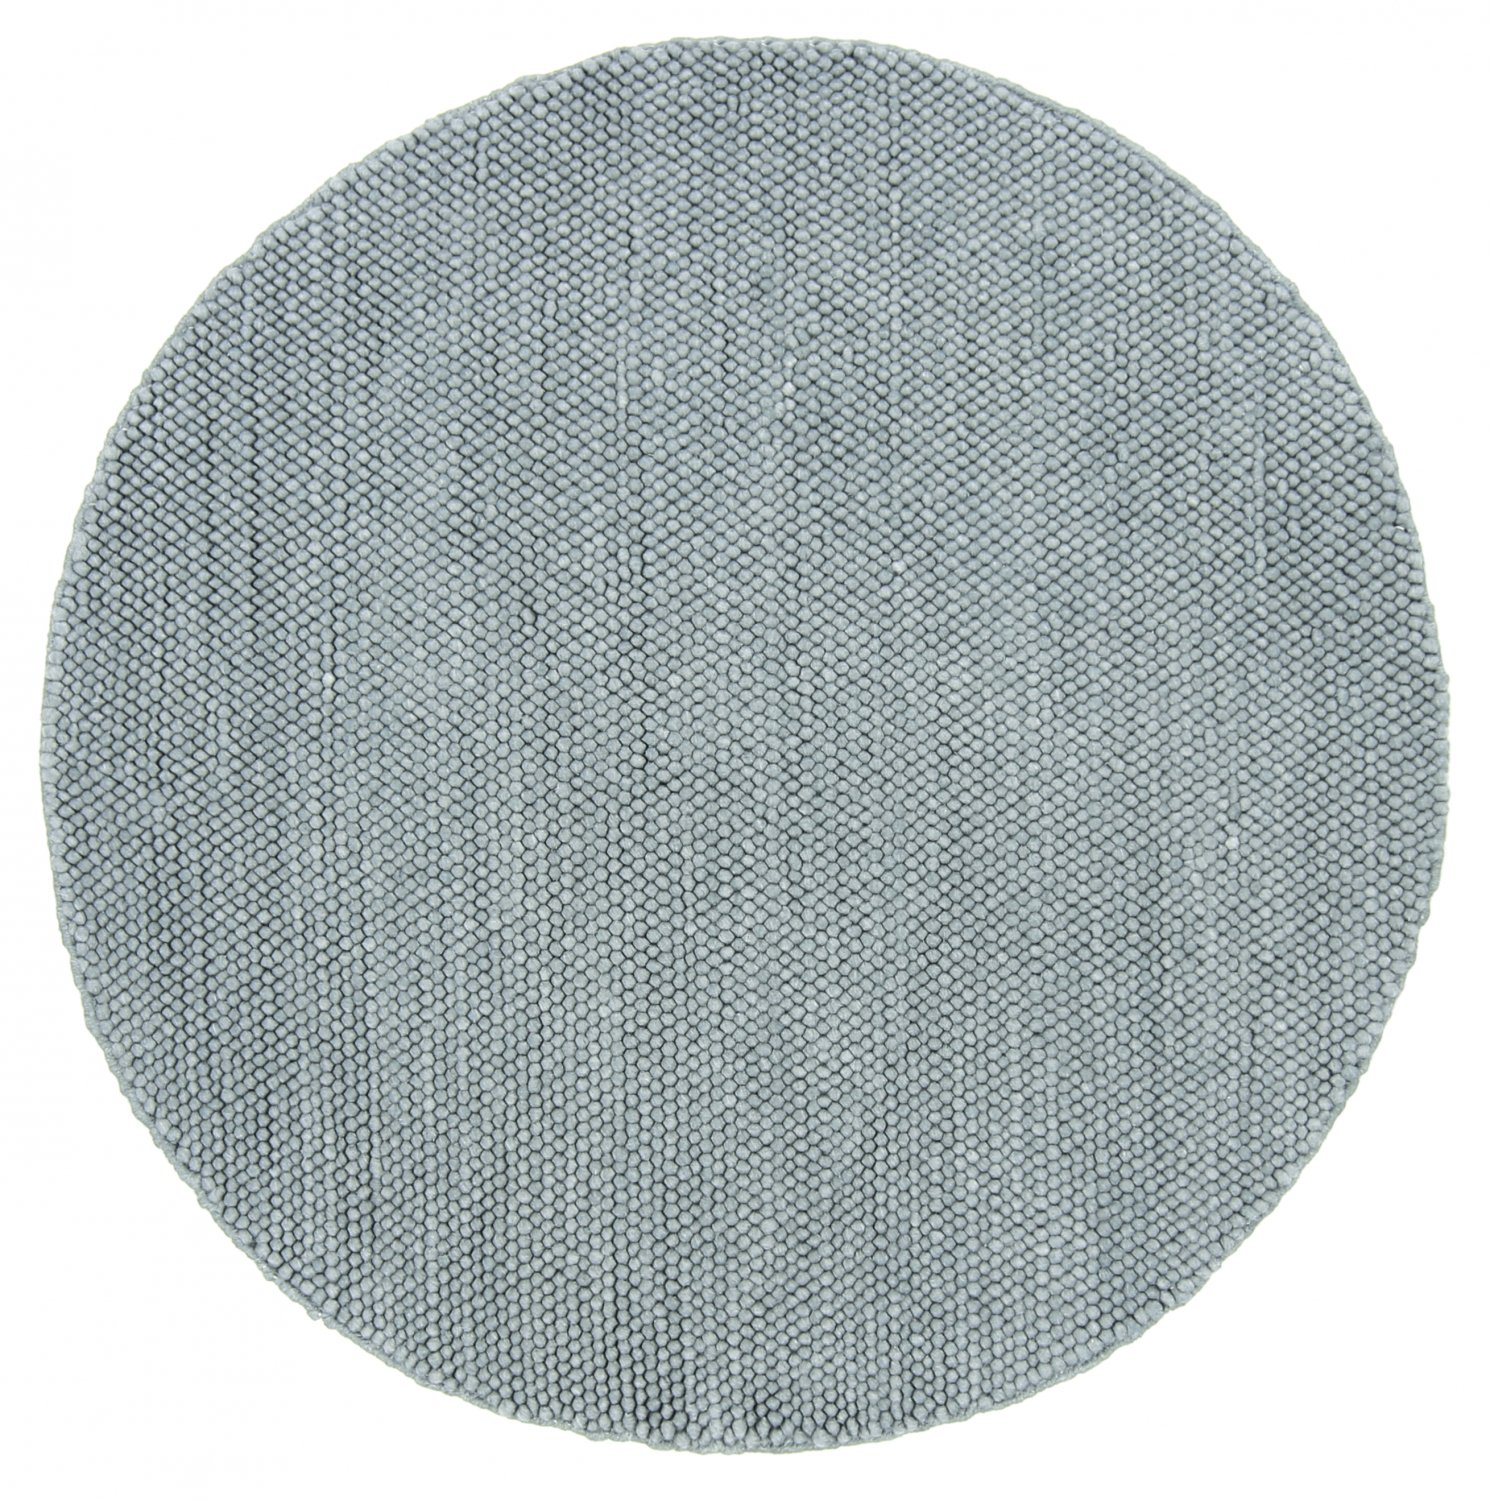 Rund matta - Avafors (grå)